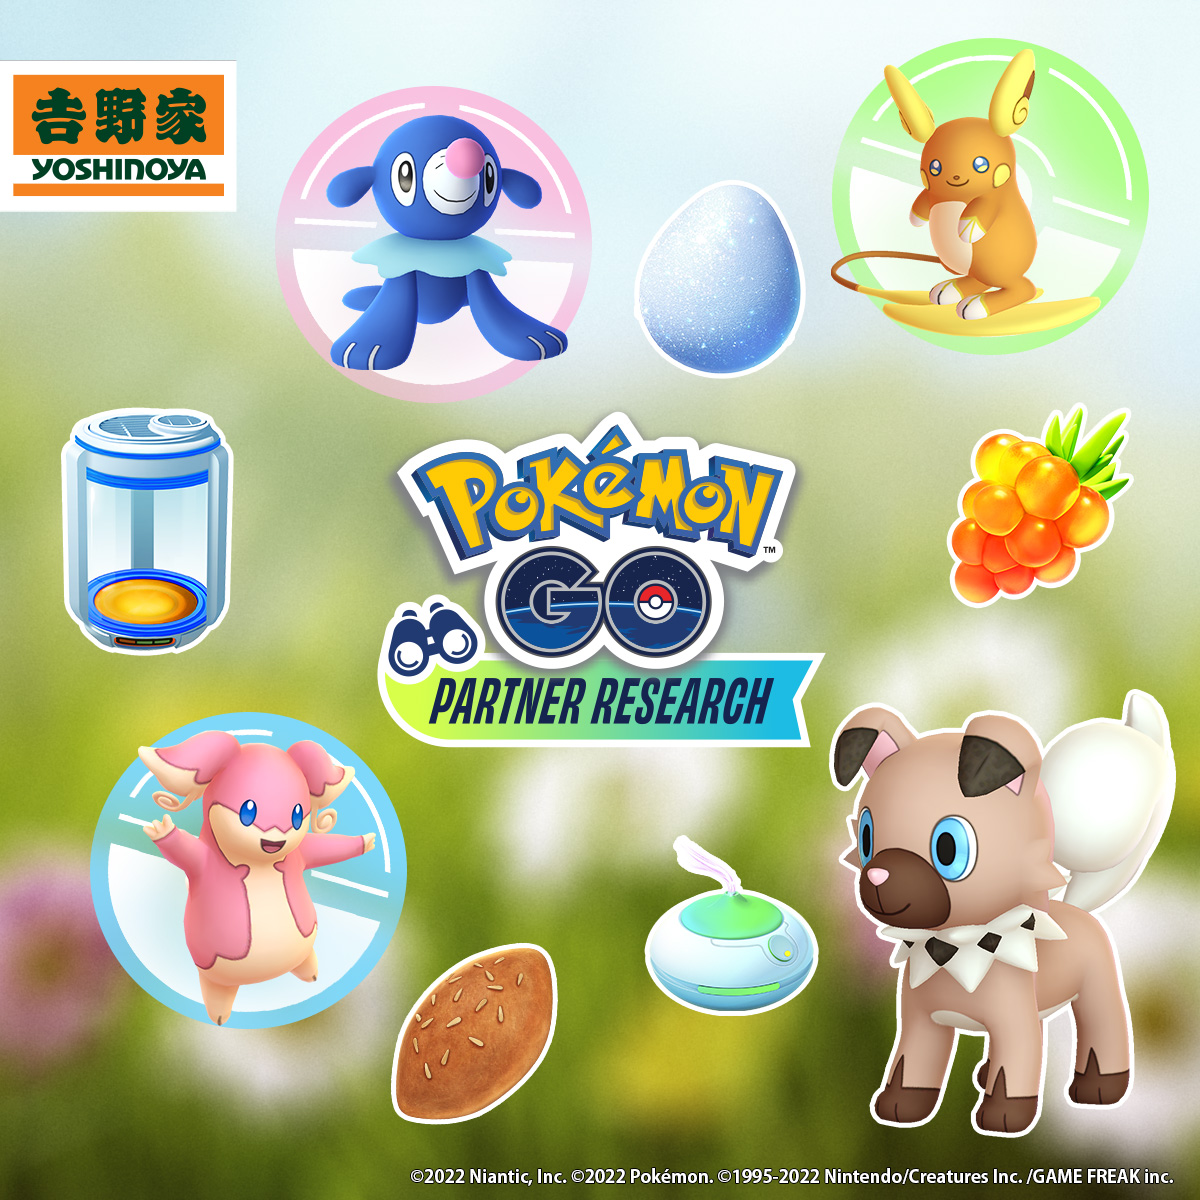 吉野家 POKEMON GO |  『Pokémon GO』パートナーリサーチ